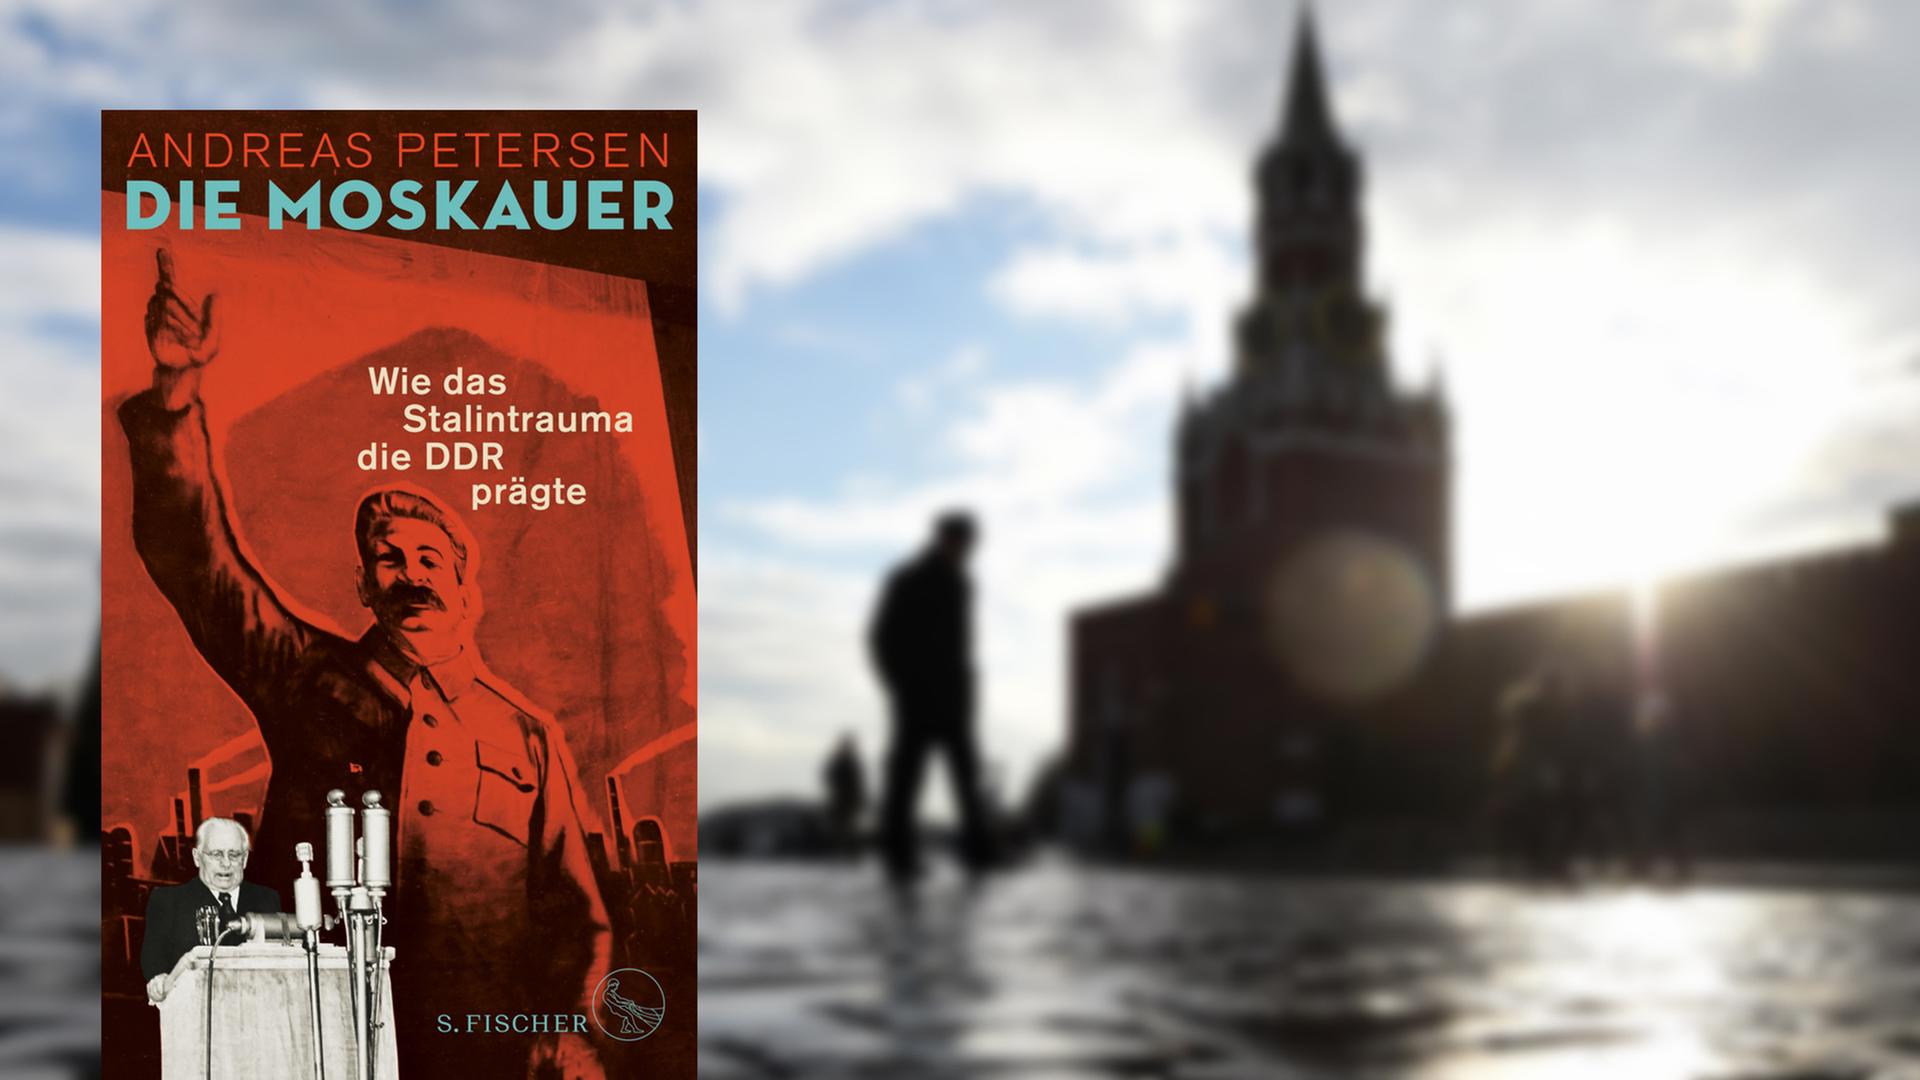 Andreas Petersen zeichnet in seinem Buch ein Porträt "Der Moskauer" in der DDR. Das Foto zeigt das rote Buchcover mit Stalin auf einem Hintergrundbild, das den Roten Platz in Moskau zeigt.